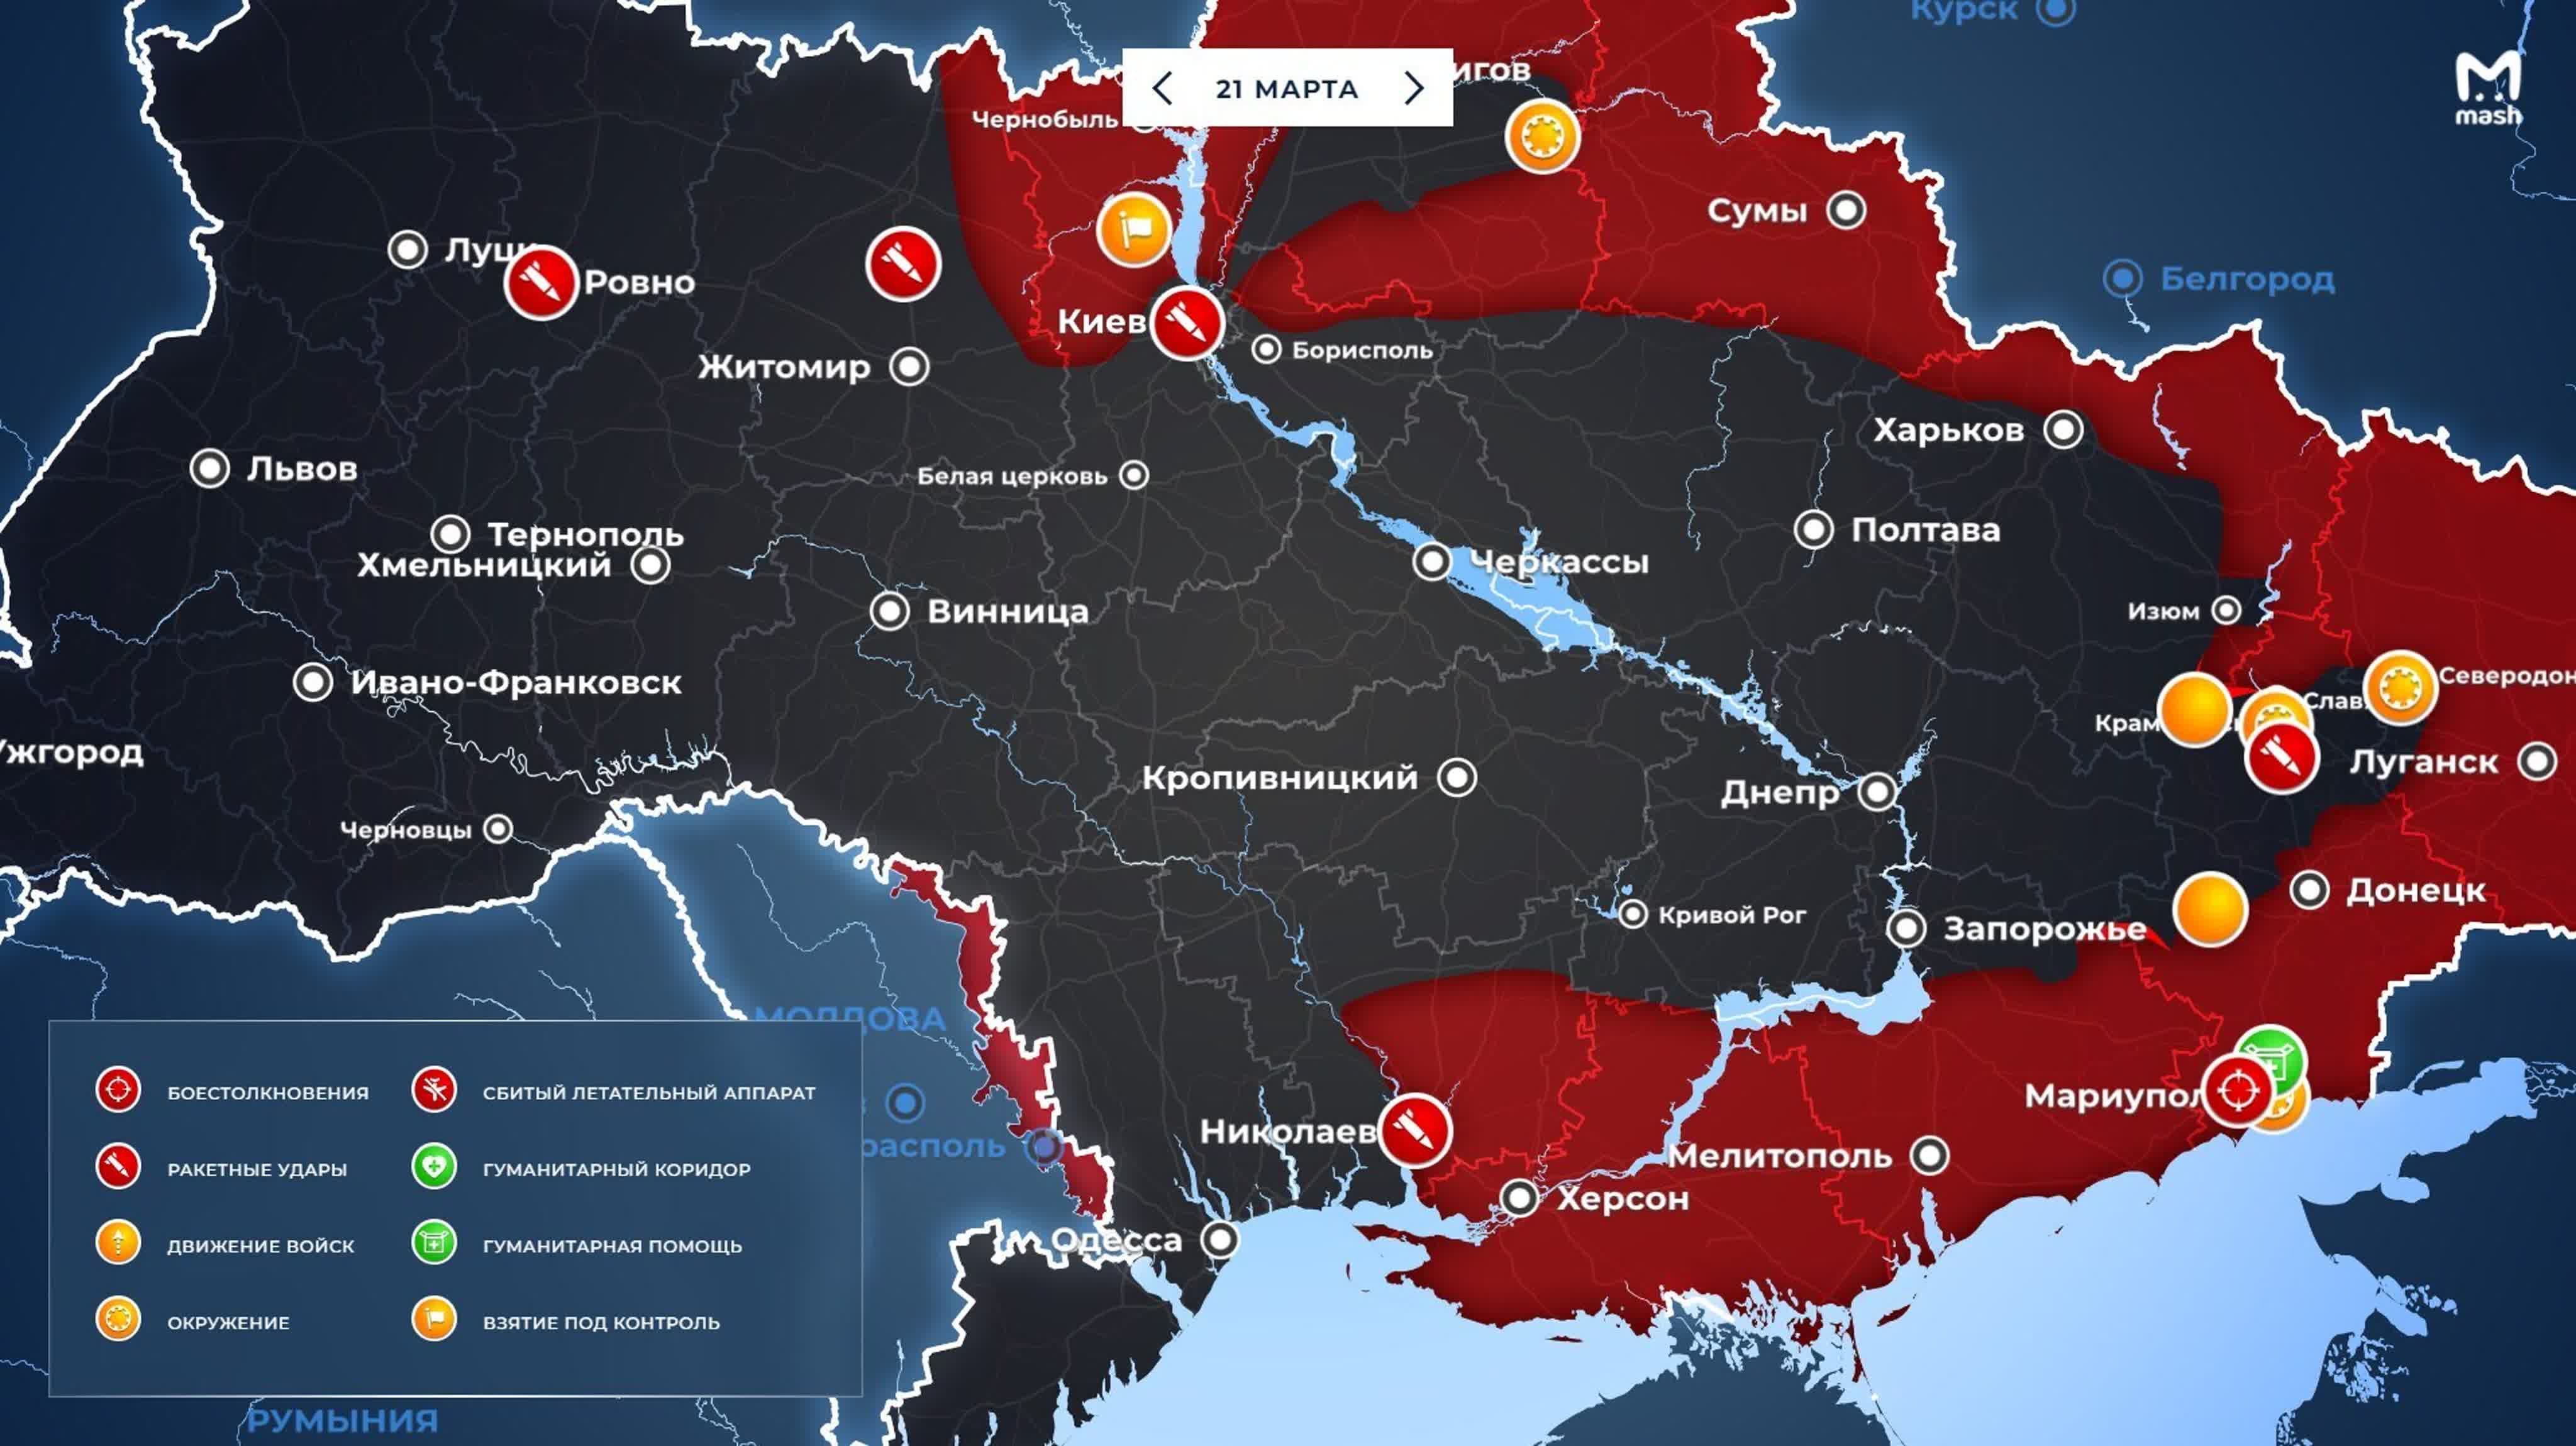 Карта боевых сегодня 18 февраля. Карта боевых действий на Украине 23.03.2022. Карта захвата территории Украины. Карта боевых действий на Украине на сегодня 23.03.2022.